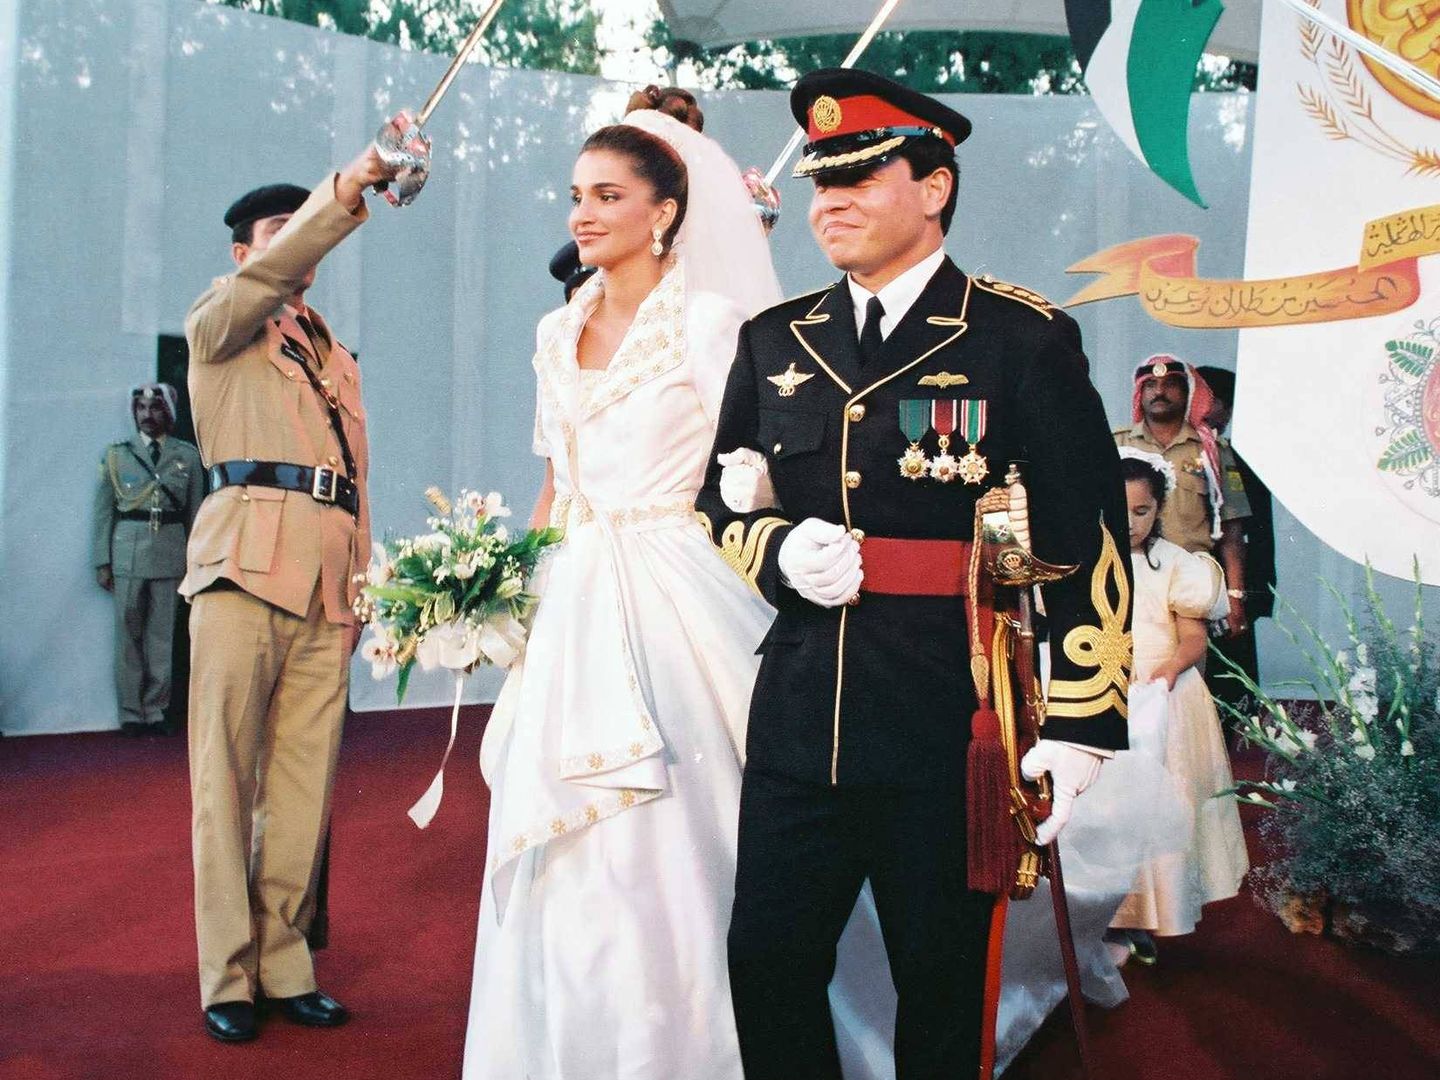 La boda de Rania y Abdalá. (CP)